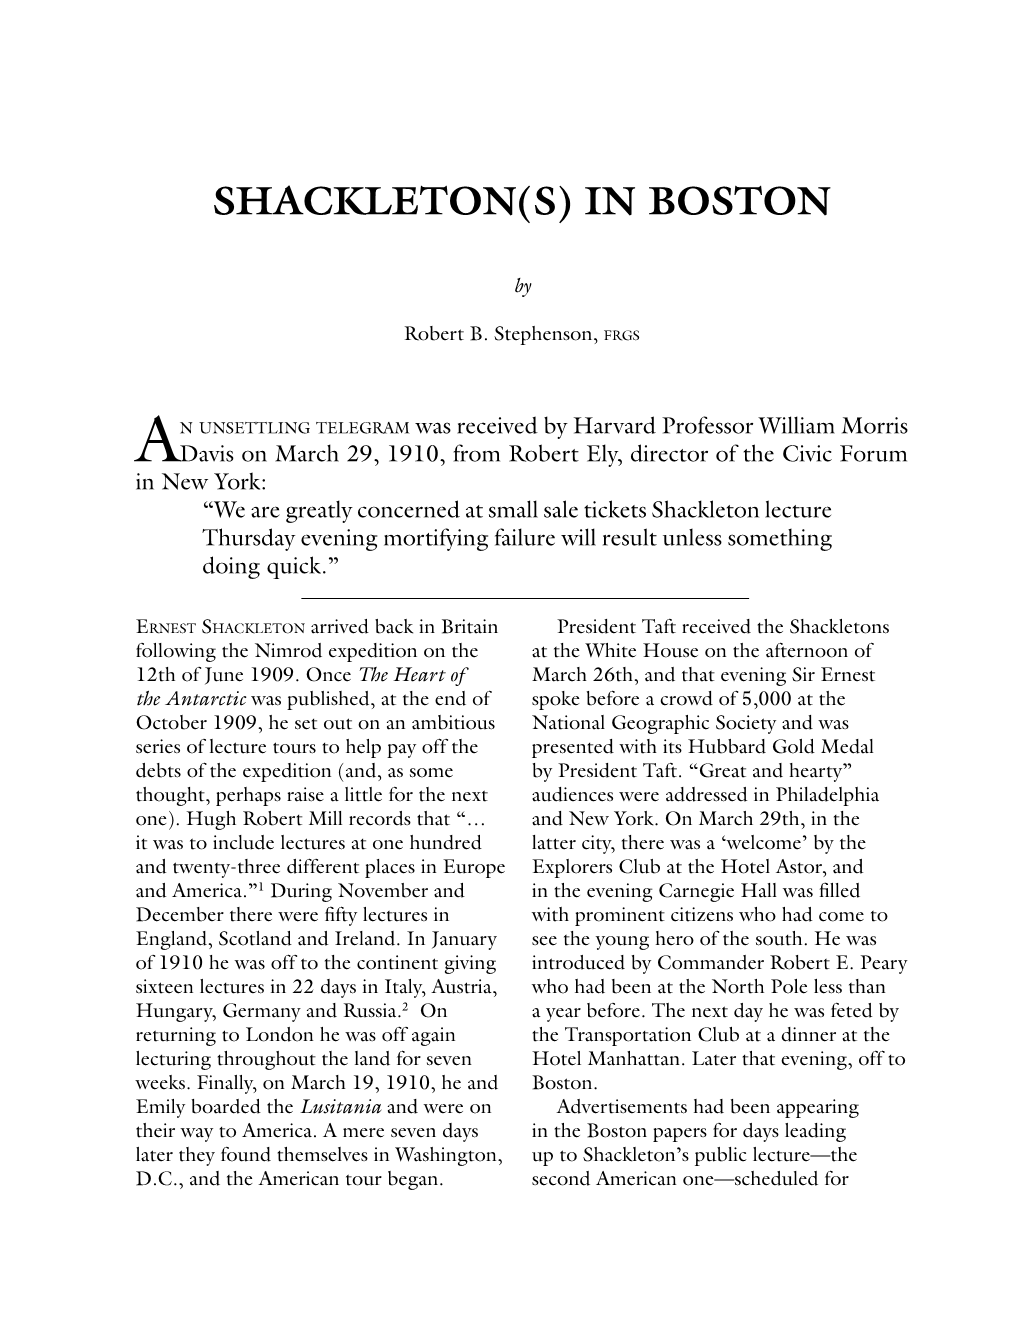 Shackleton(S) in Boston